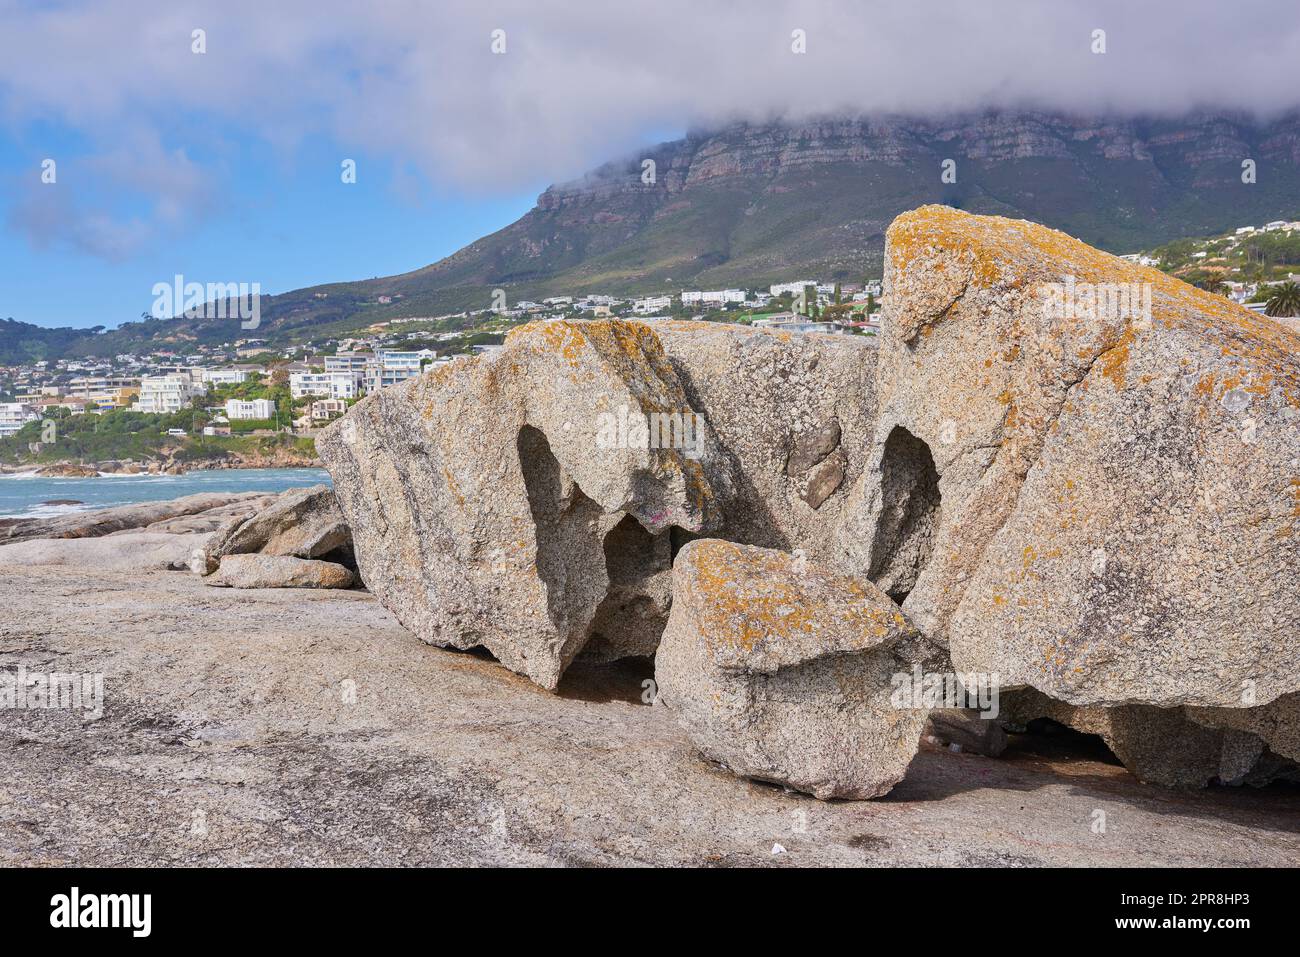 Felsen an der felsigen Küste von Westkap, Südafrika, Landschaftsblick auf einen wunderschönen Berg und Küste in Kapstadt. Natürliche Umgebung am Meer in einer beliebten Touristenlage für einen Urlaub Stockfoto